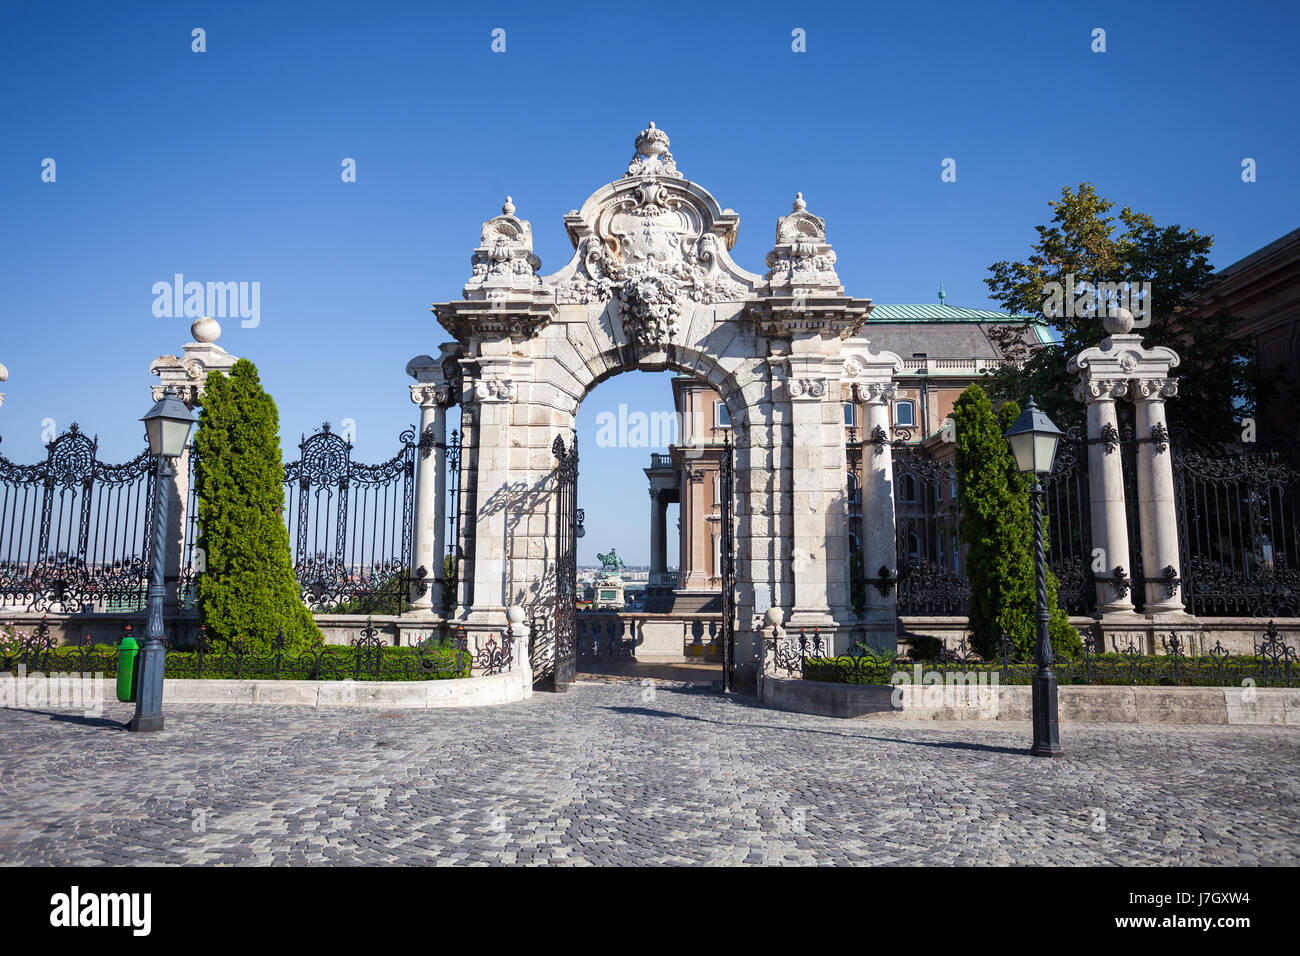 Puerta de Hierro antiguo e histórico del Castillo de Buda en Budapest, Hungría Foto de stock